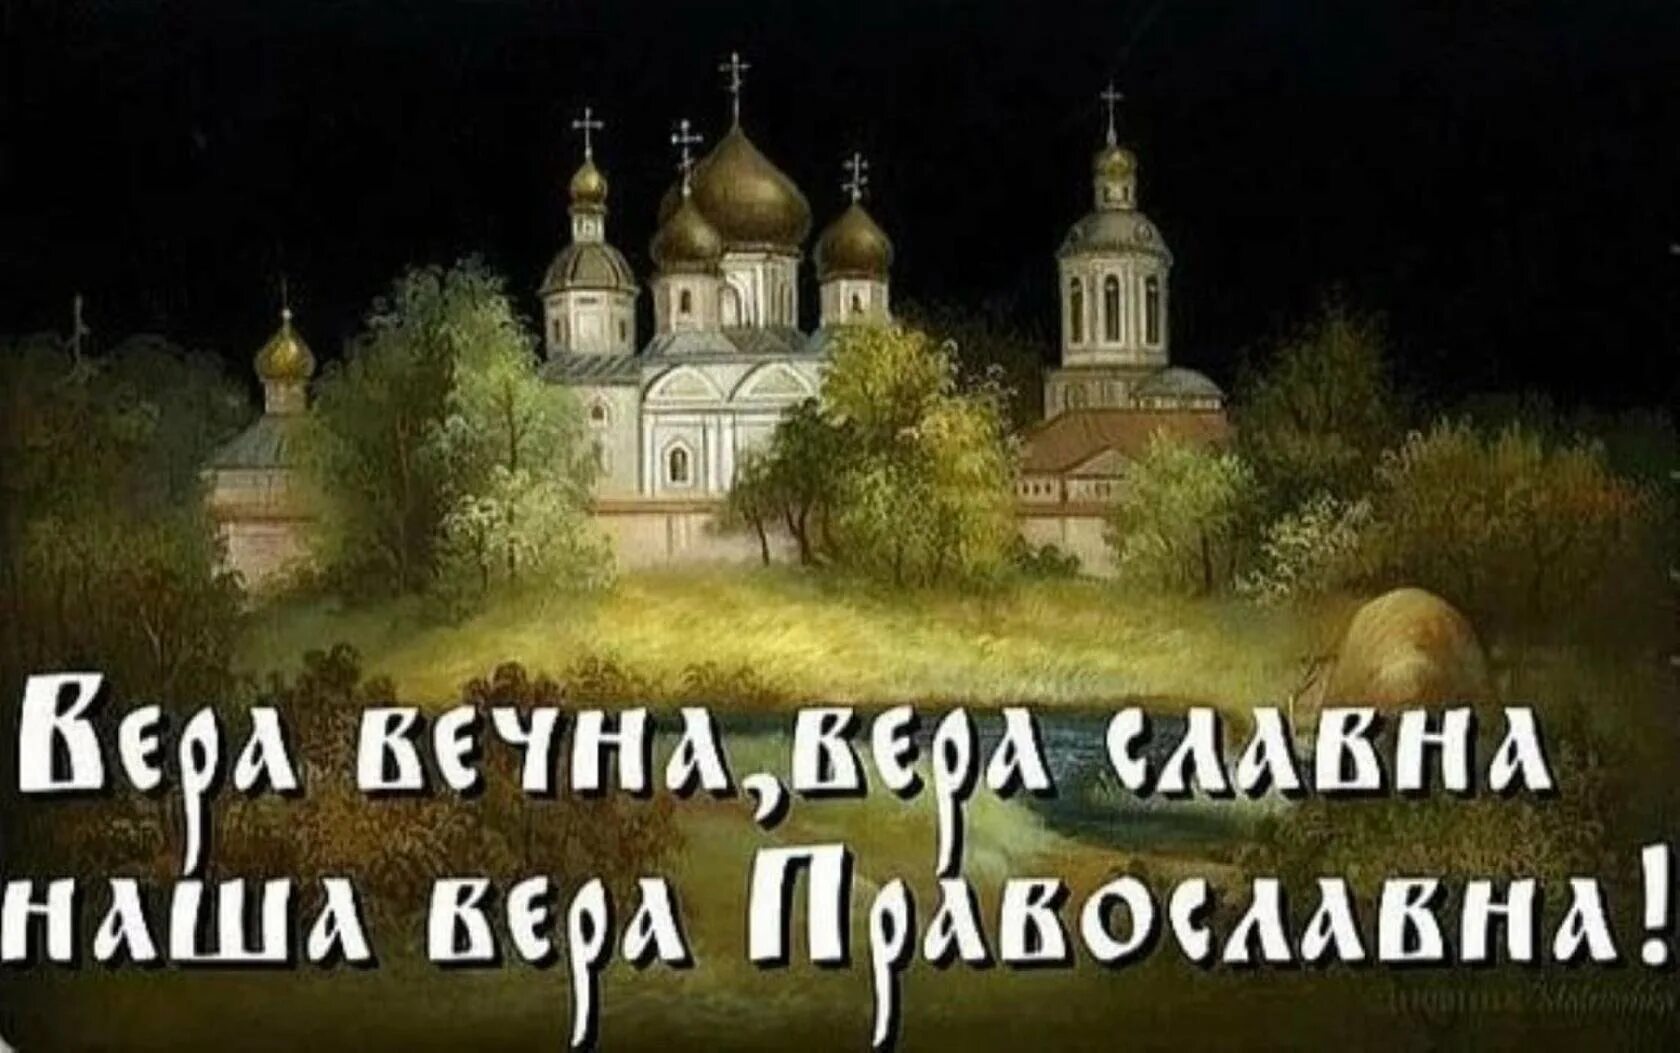 Русь Святая православная. О вере славной -вере православной. Ой святая русь